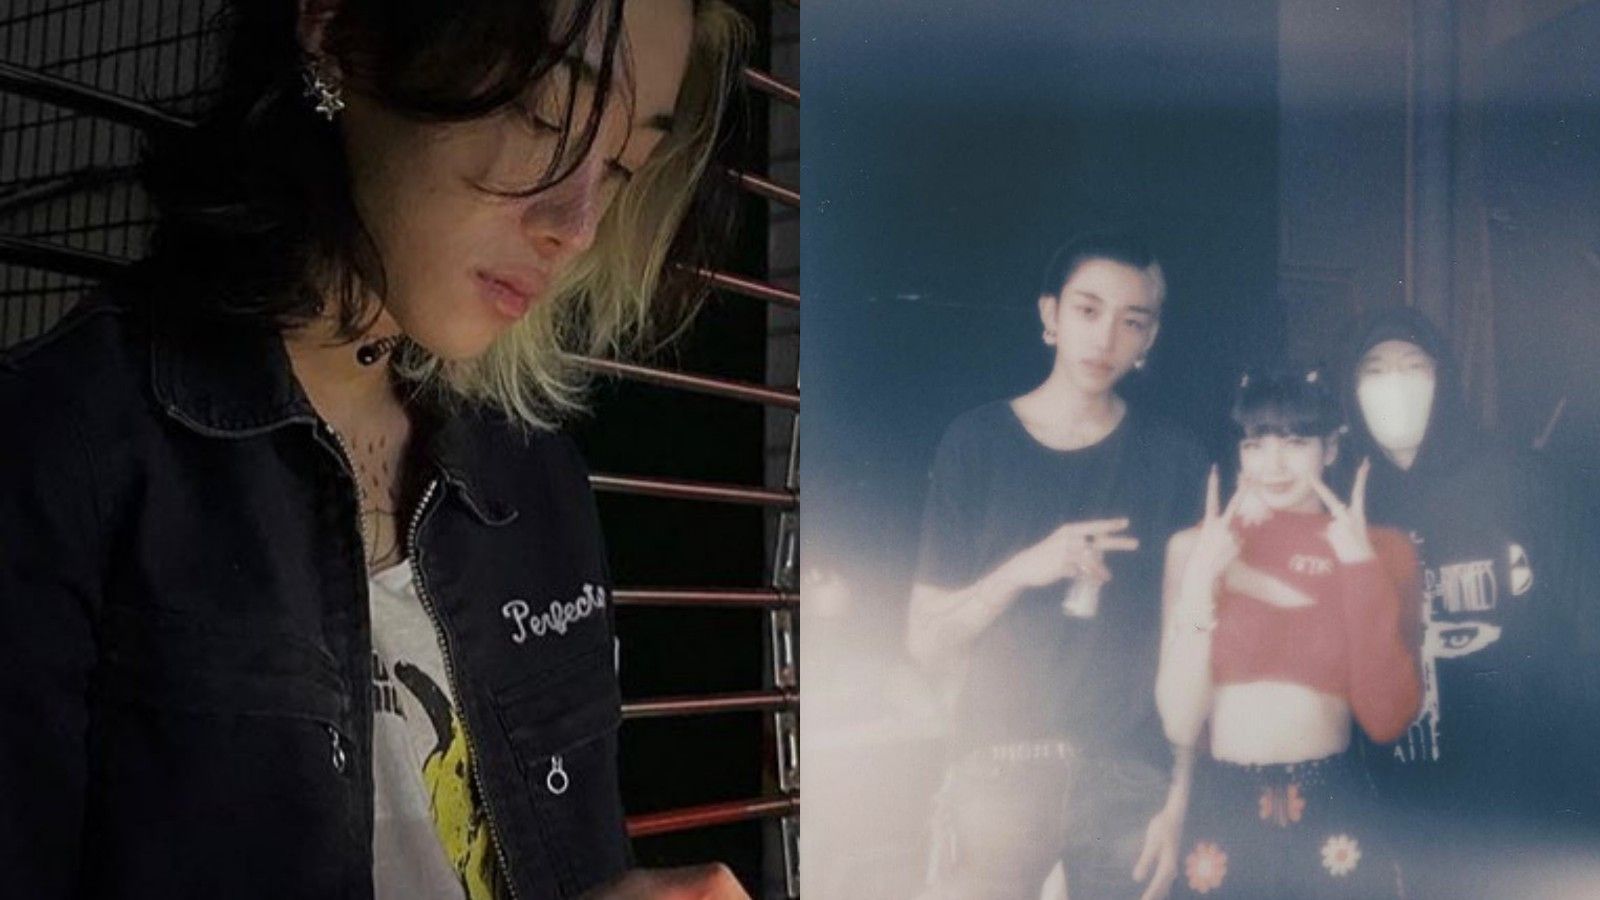 Identitas Pria Yang Dipeluk Lisa BLACKPINK Di Teaser MV 'Lovesick Girl' Terungkap, Siapa?